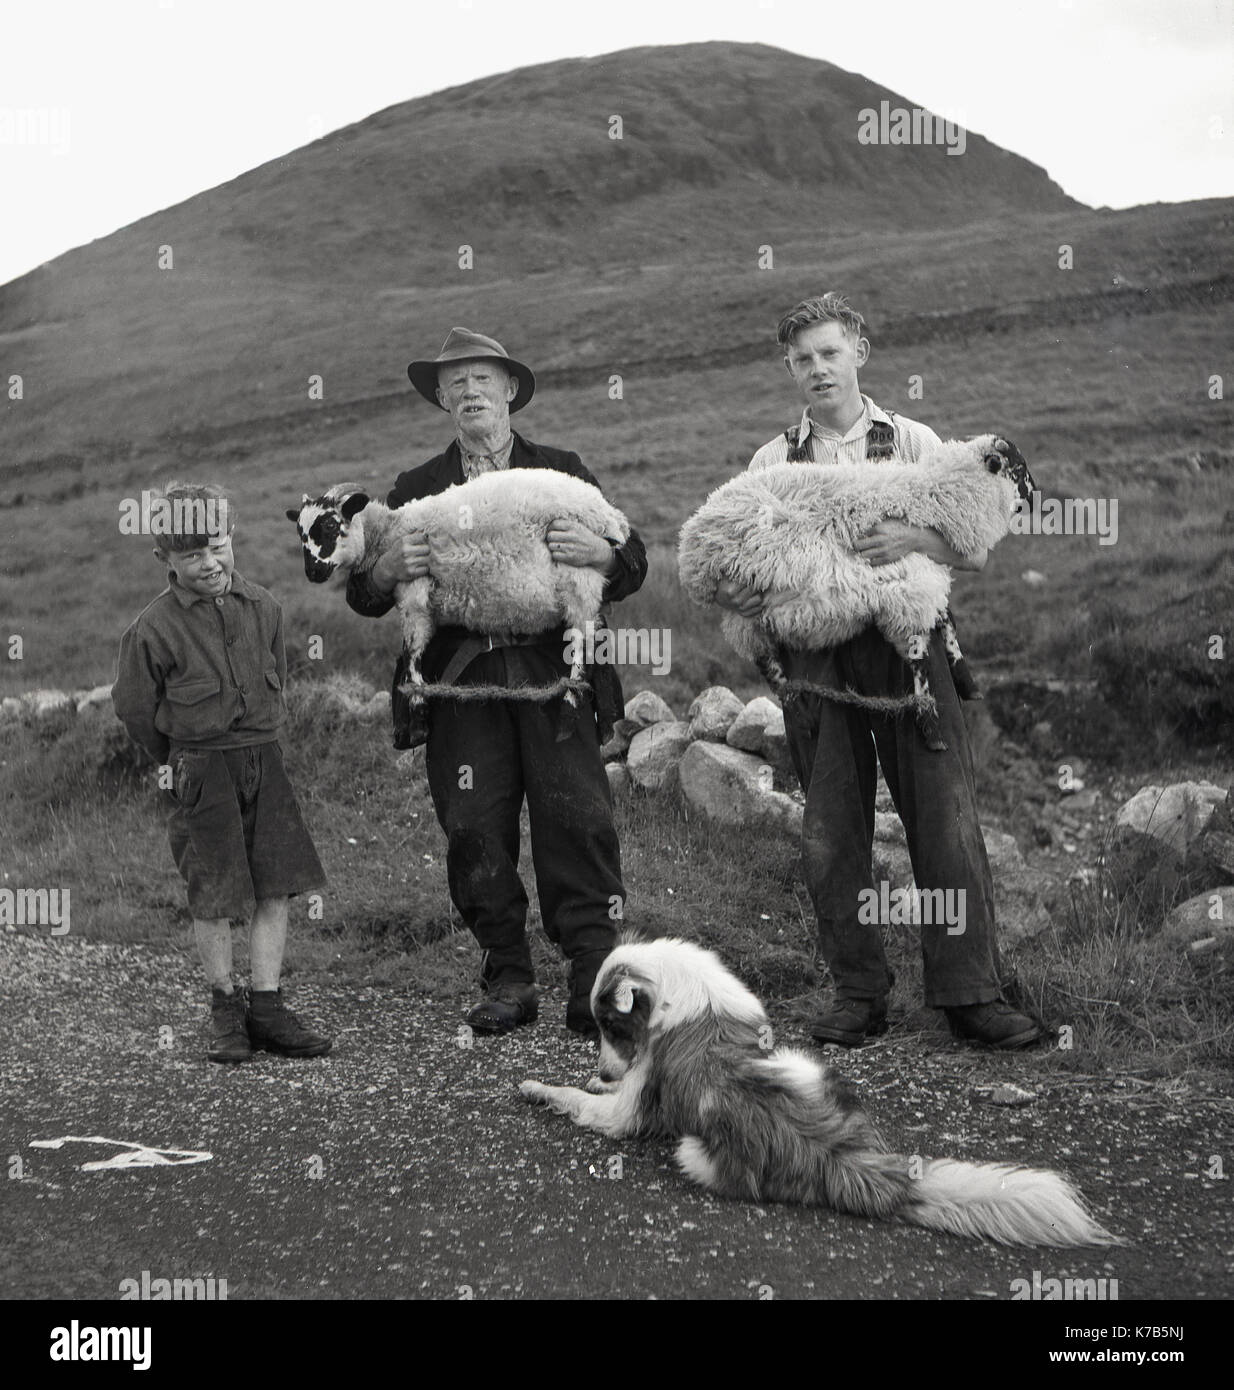 Dans les années 1950, photo historique de J. Allan Cash d'un berger irlandais avec ses deux fils et son chien de berger debout sur un sentier à flanc de colline, en Irlande du Nord. Le père et le garçon le plus âgé portent chacun un mouton attaché avec une corde autour de leurs jambes. Banque D'Images